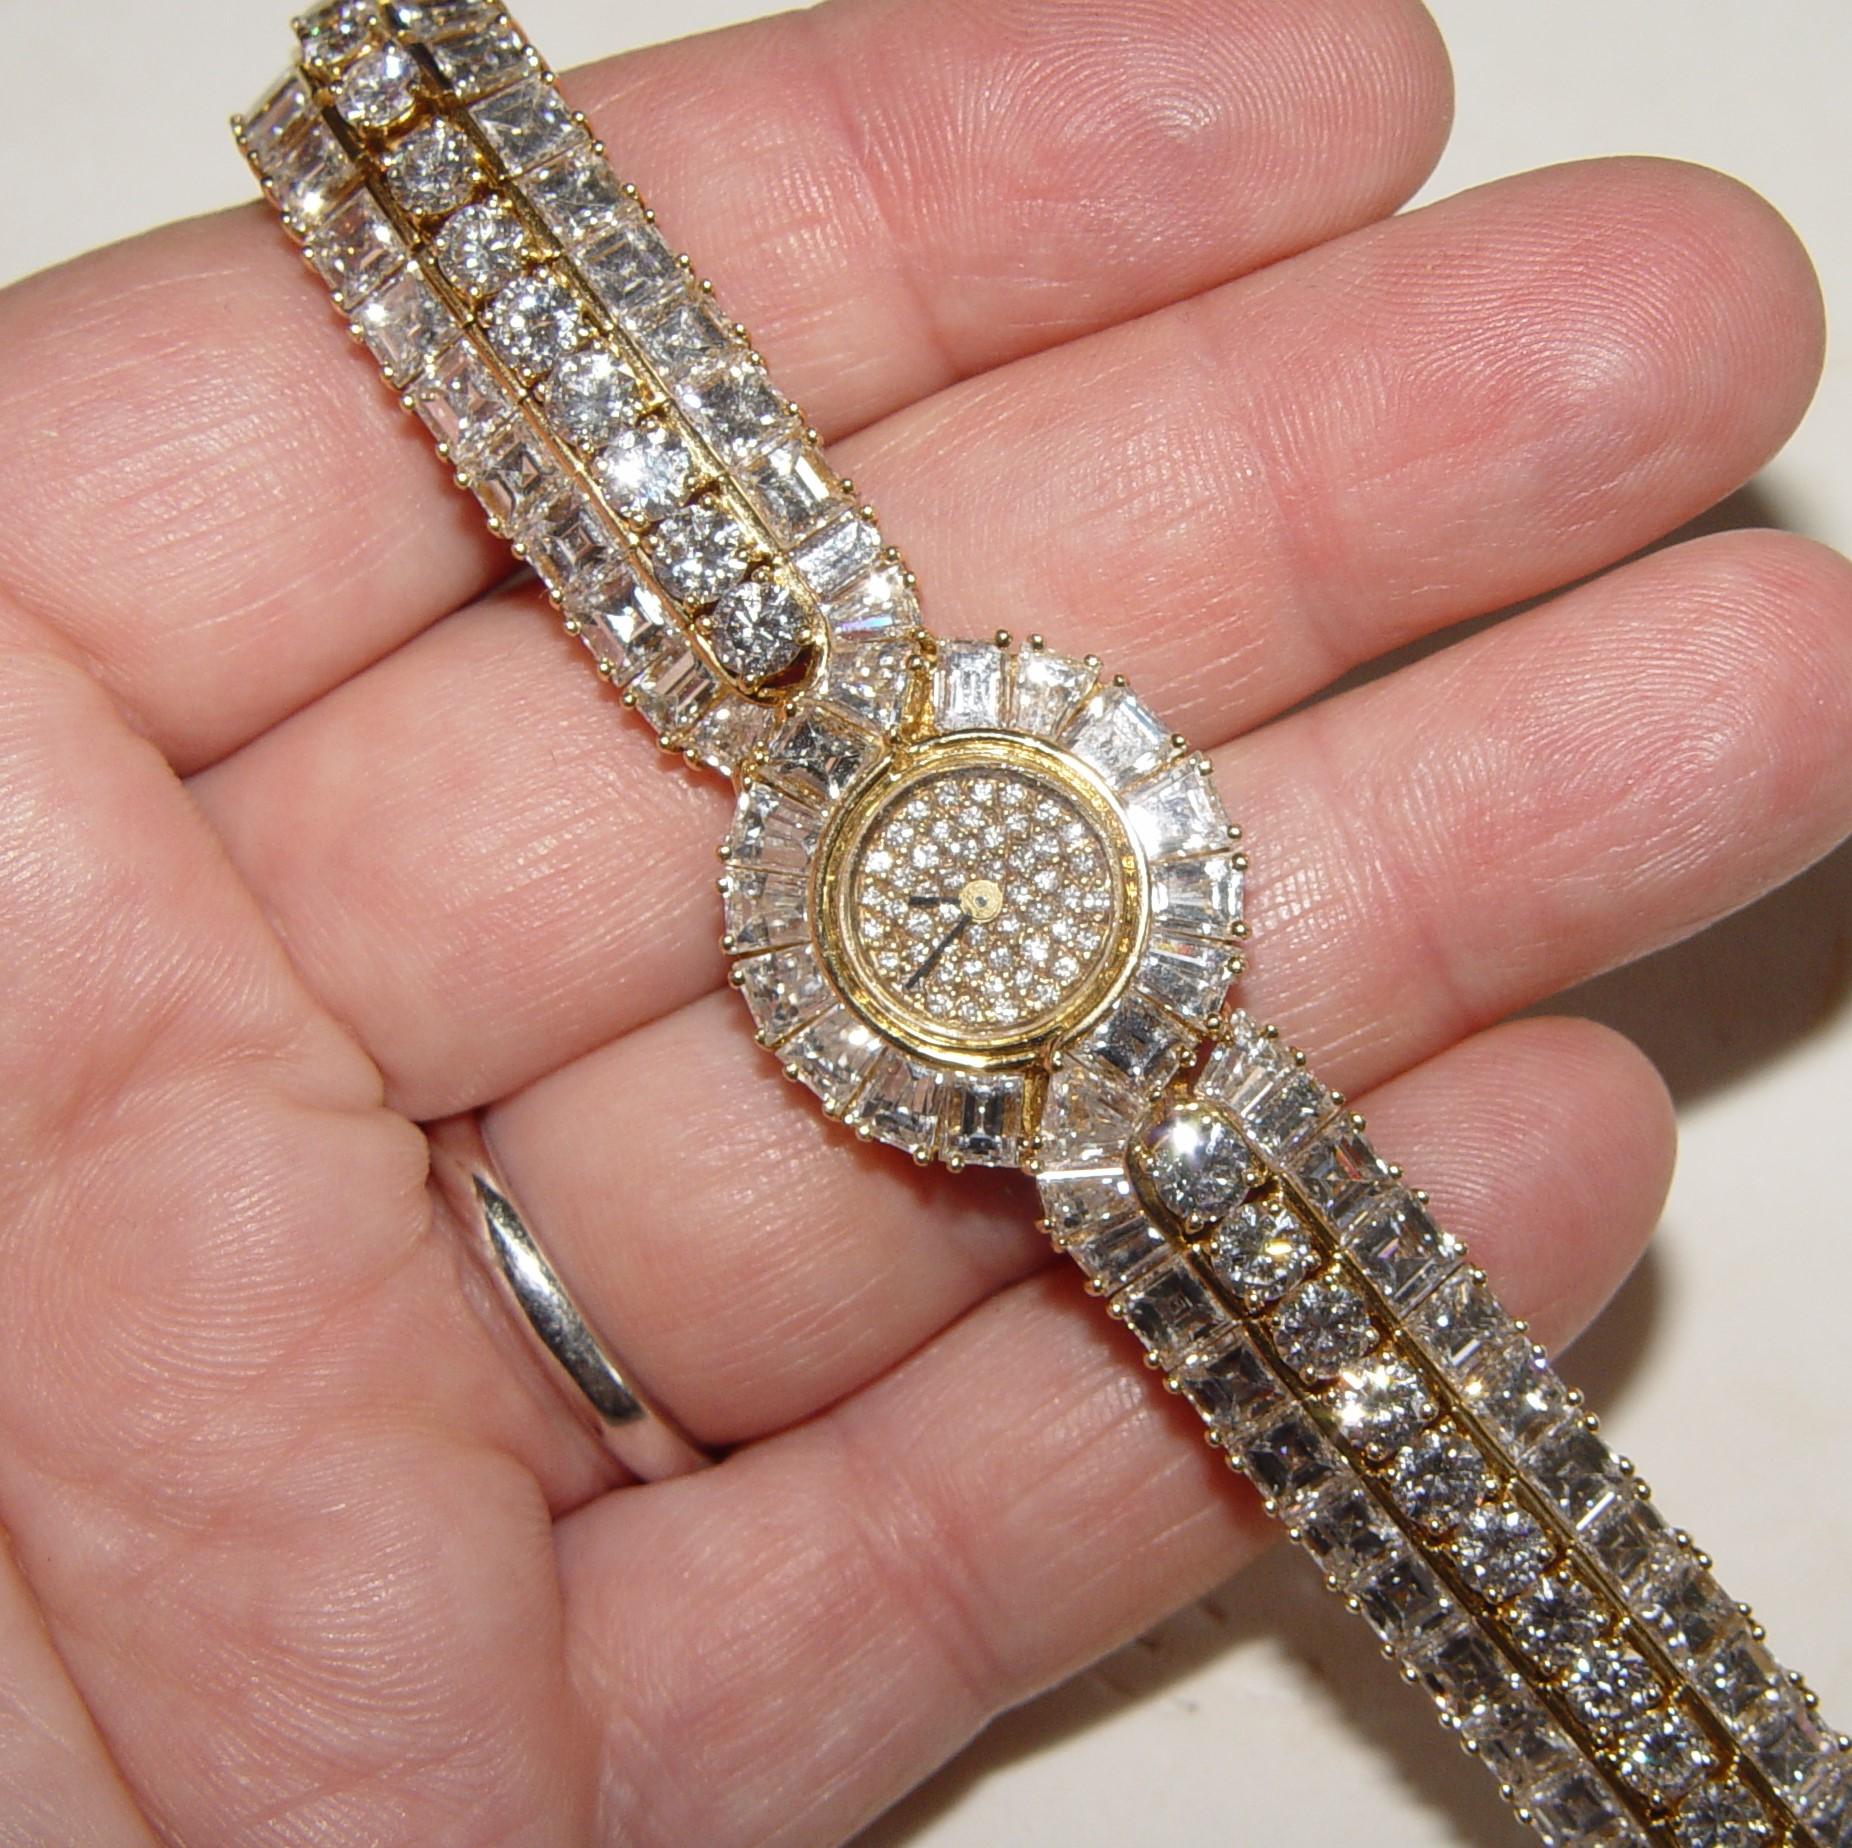 Wunderschöne Damenuhr, besetzt mit Diamanten in Collection'S-Qualität im Brillant- und Ascher-Schliff, die in Farbe und Reinheit gut aufeinander abgestimmt sind. Nach unserer Berechnung enthält diese Uhr etwa 20-25 Karat Diamanten (Farbe D-E-F und